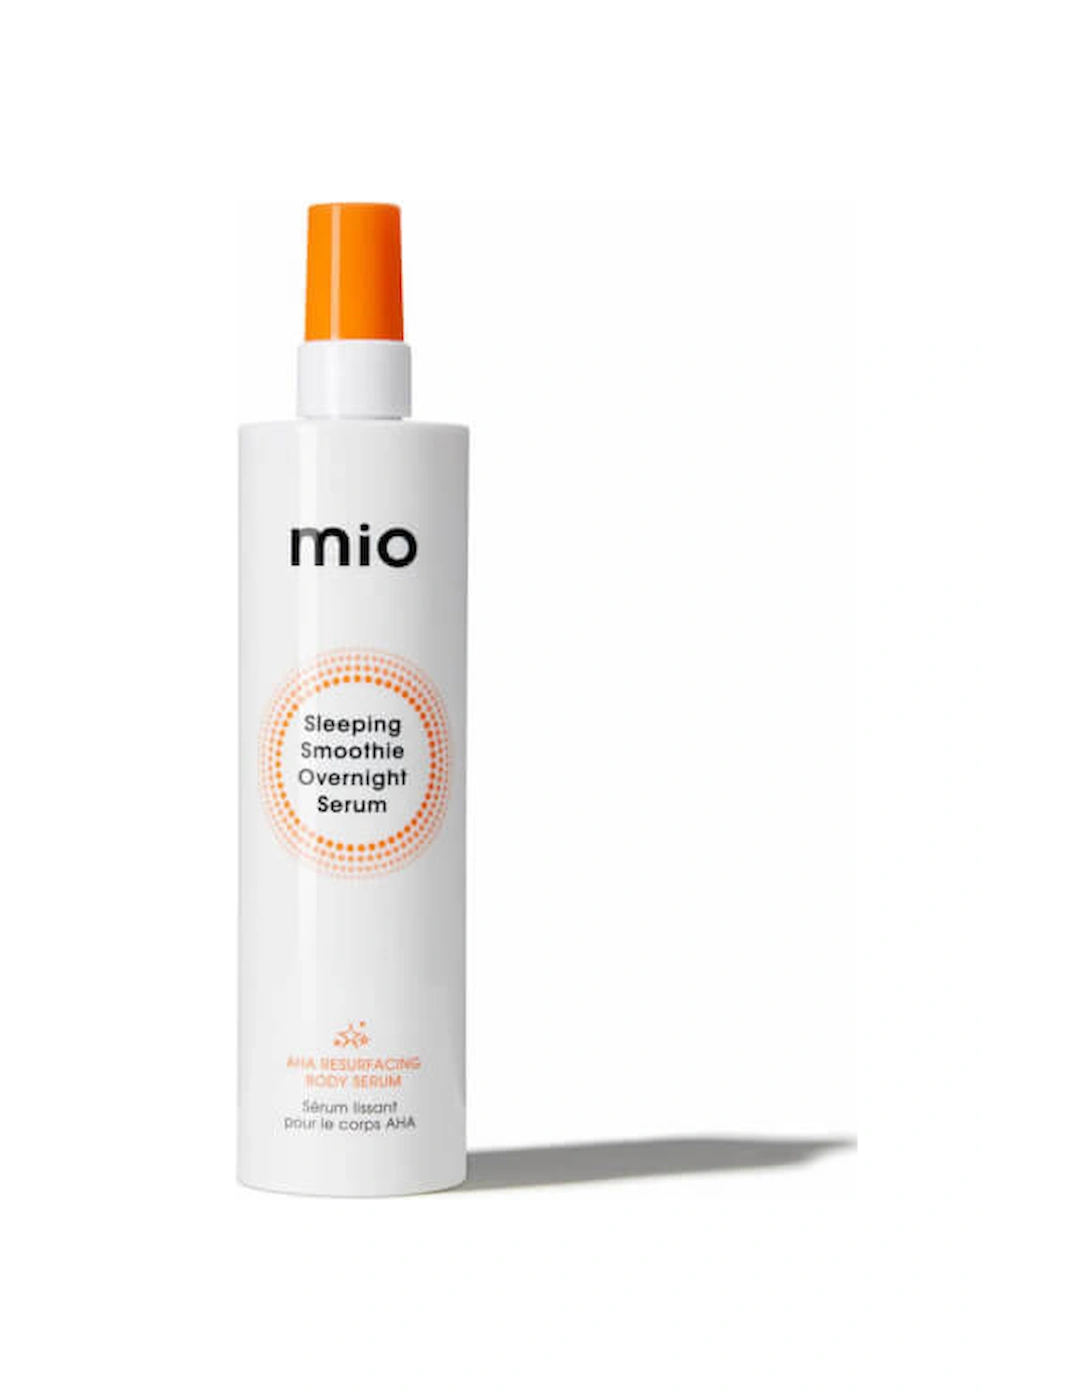 Mio Sleeping Smoothie Overnight Serum 200ml - Mio Skincare, 2 of 1